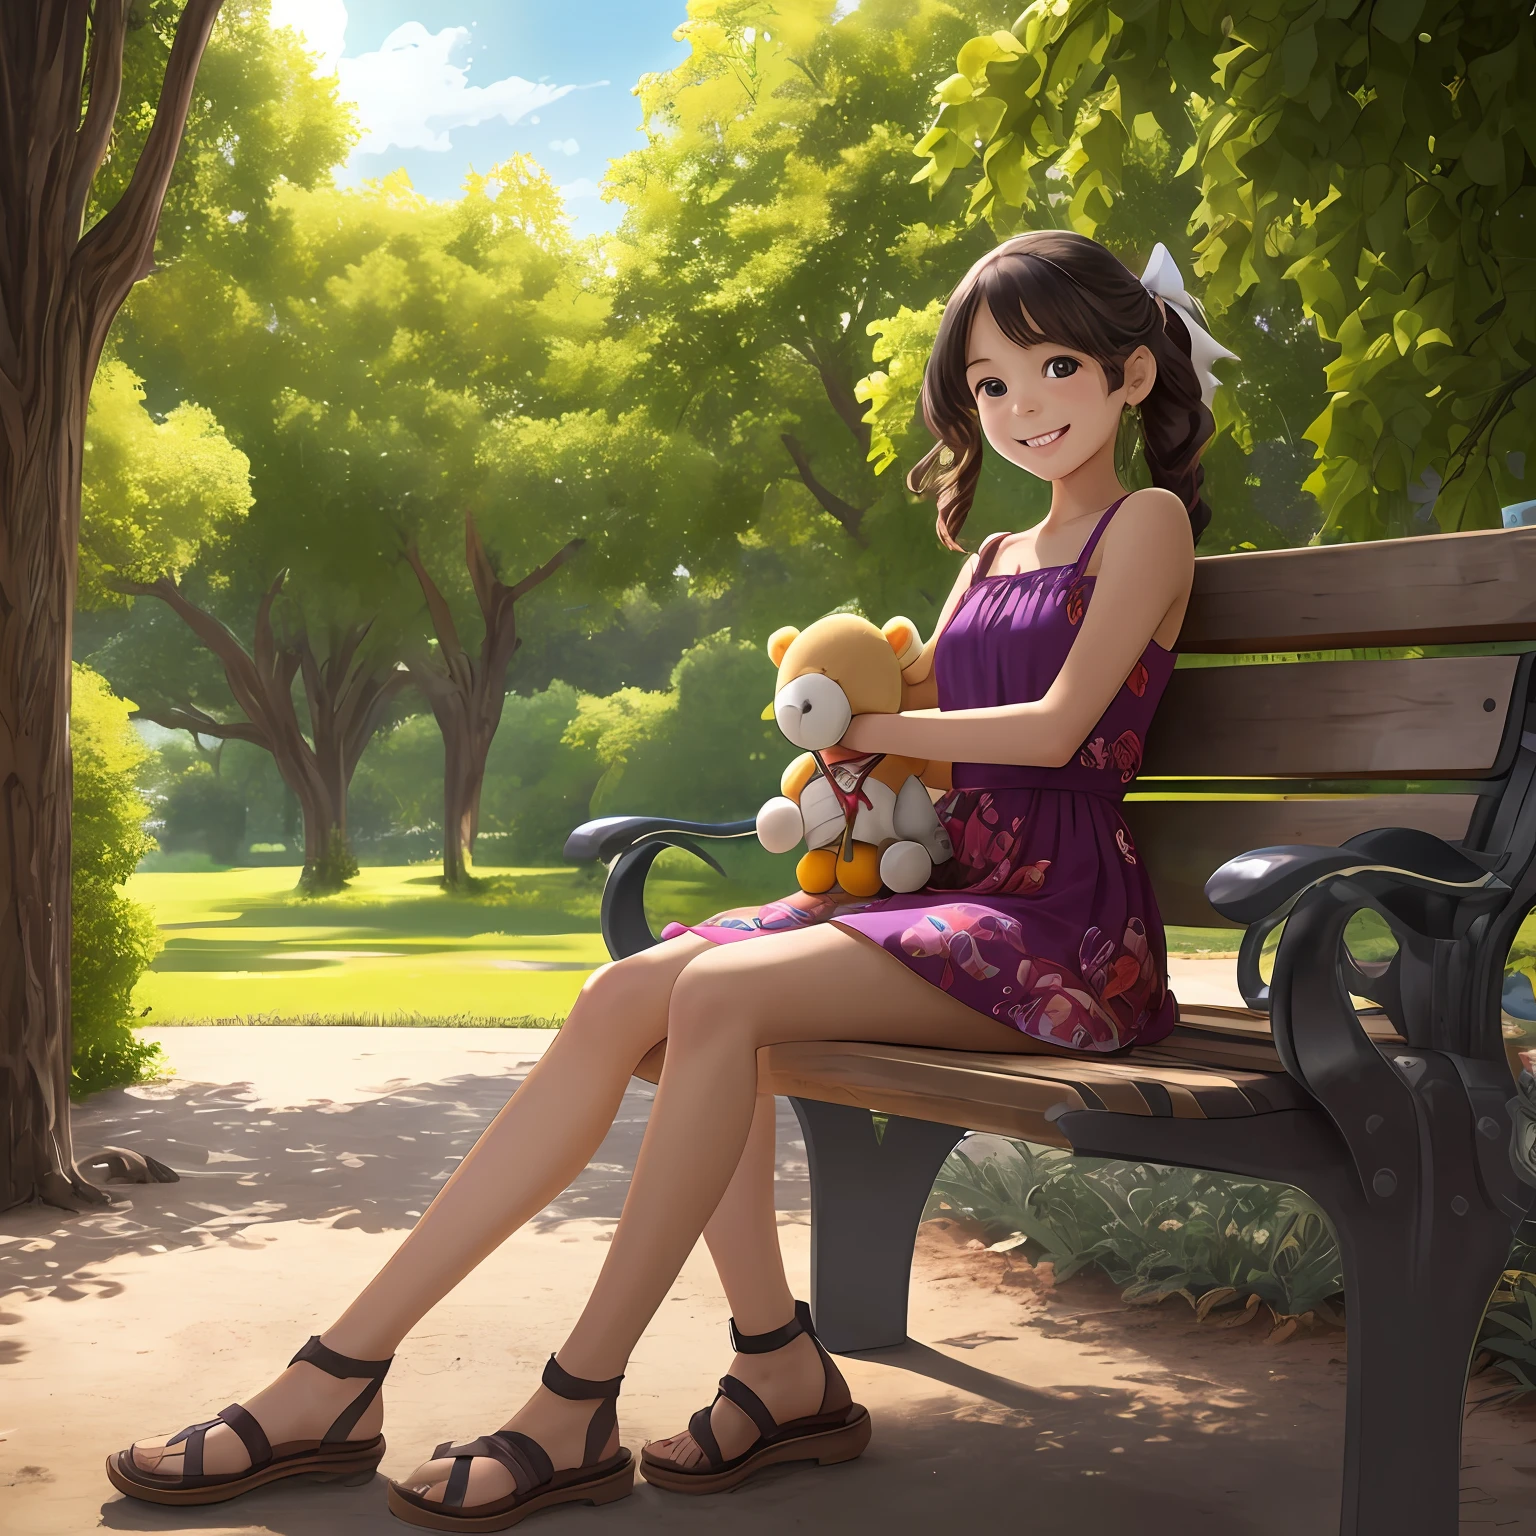 Потрясающе реалистичное изображение молодой девушки, сидящей на скамейке в парке., В окружении любимых игрушек. У девушки заразительная улыбка, ее яркие глаза сверкают радостью, когда она взаимодействует со своими игрушками. На ней красочное платье, и ее волосы уложены милой лентой. Окружающая среда парка наполнена пышными зелеными деревьями., цветущие цветы, и легкий ветерок. Освещение мягкое, освещая сцену теплым солнечным светом, создание безмятежной и уютной атмосферы. Фотореалистичный стиль передает каждую деталь., от текстур игрушек до тонкой игры света и тени. --с 16:9 --авто